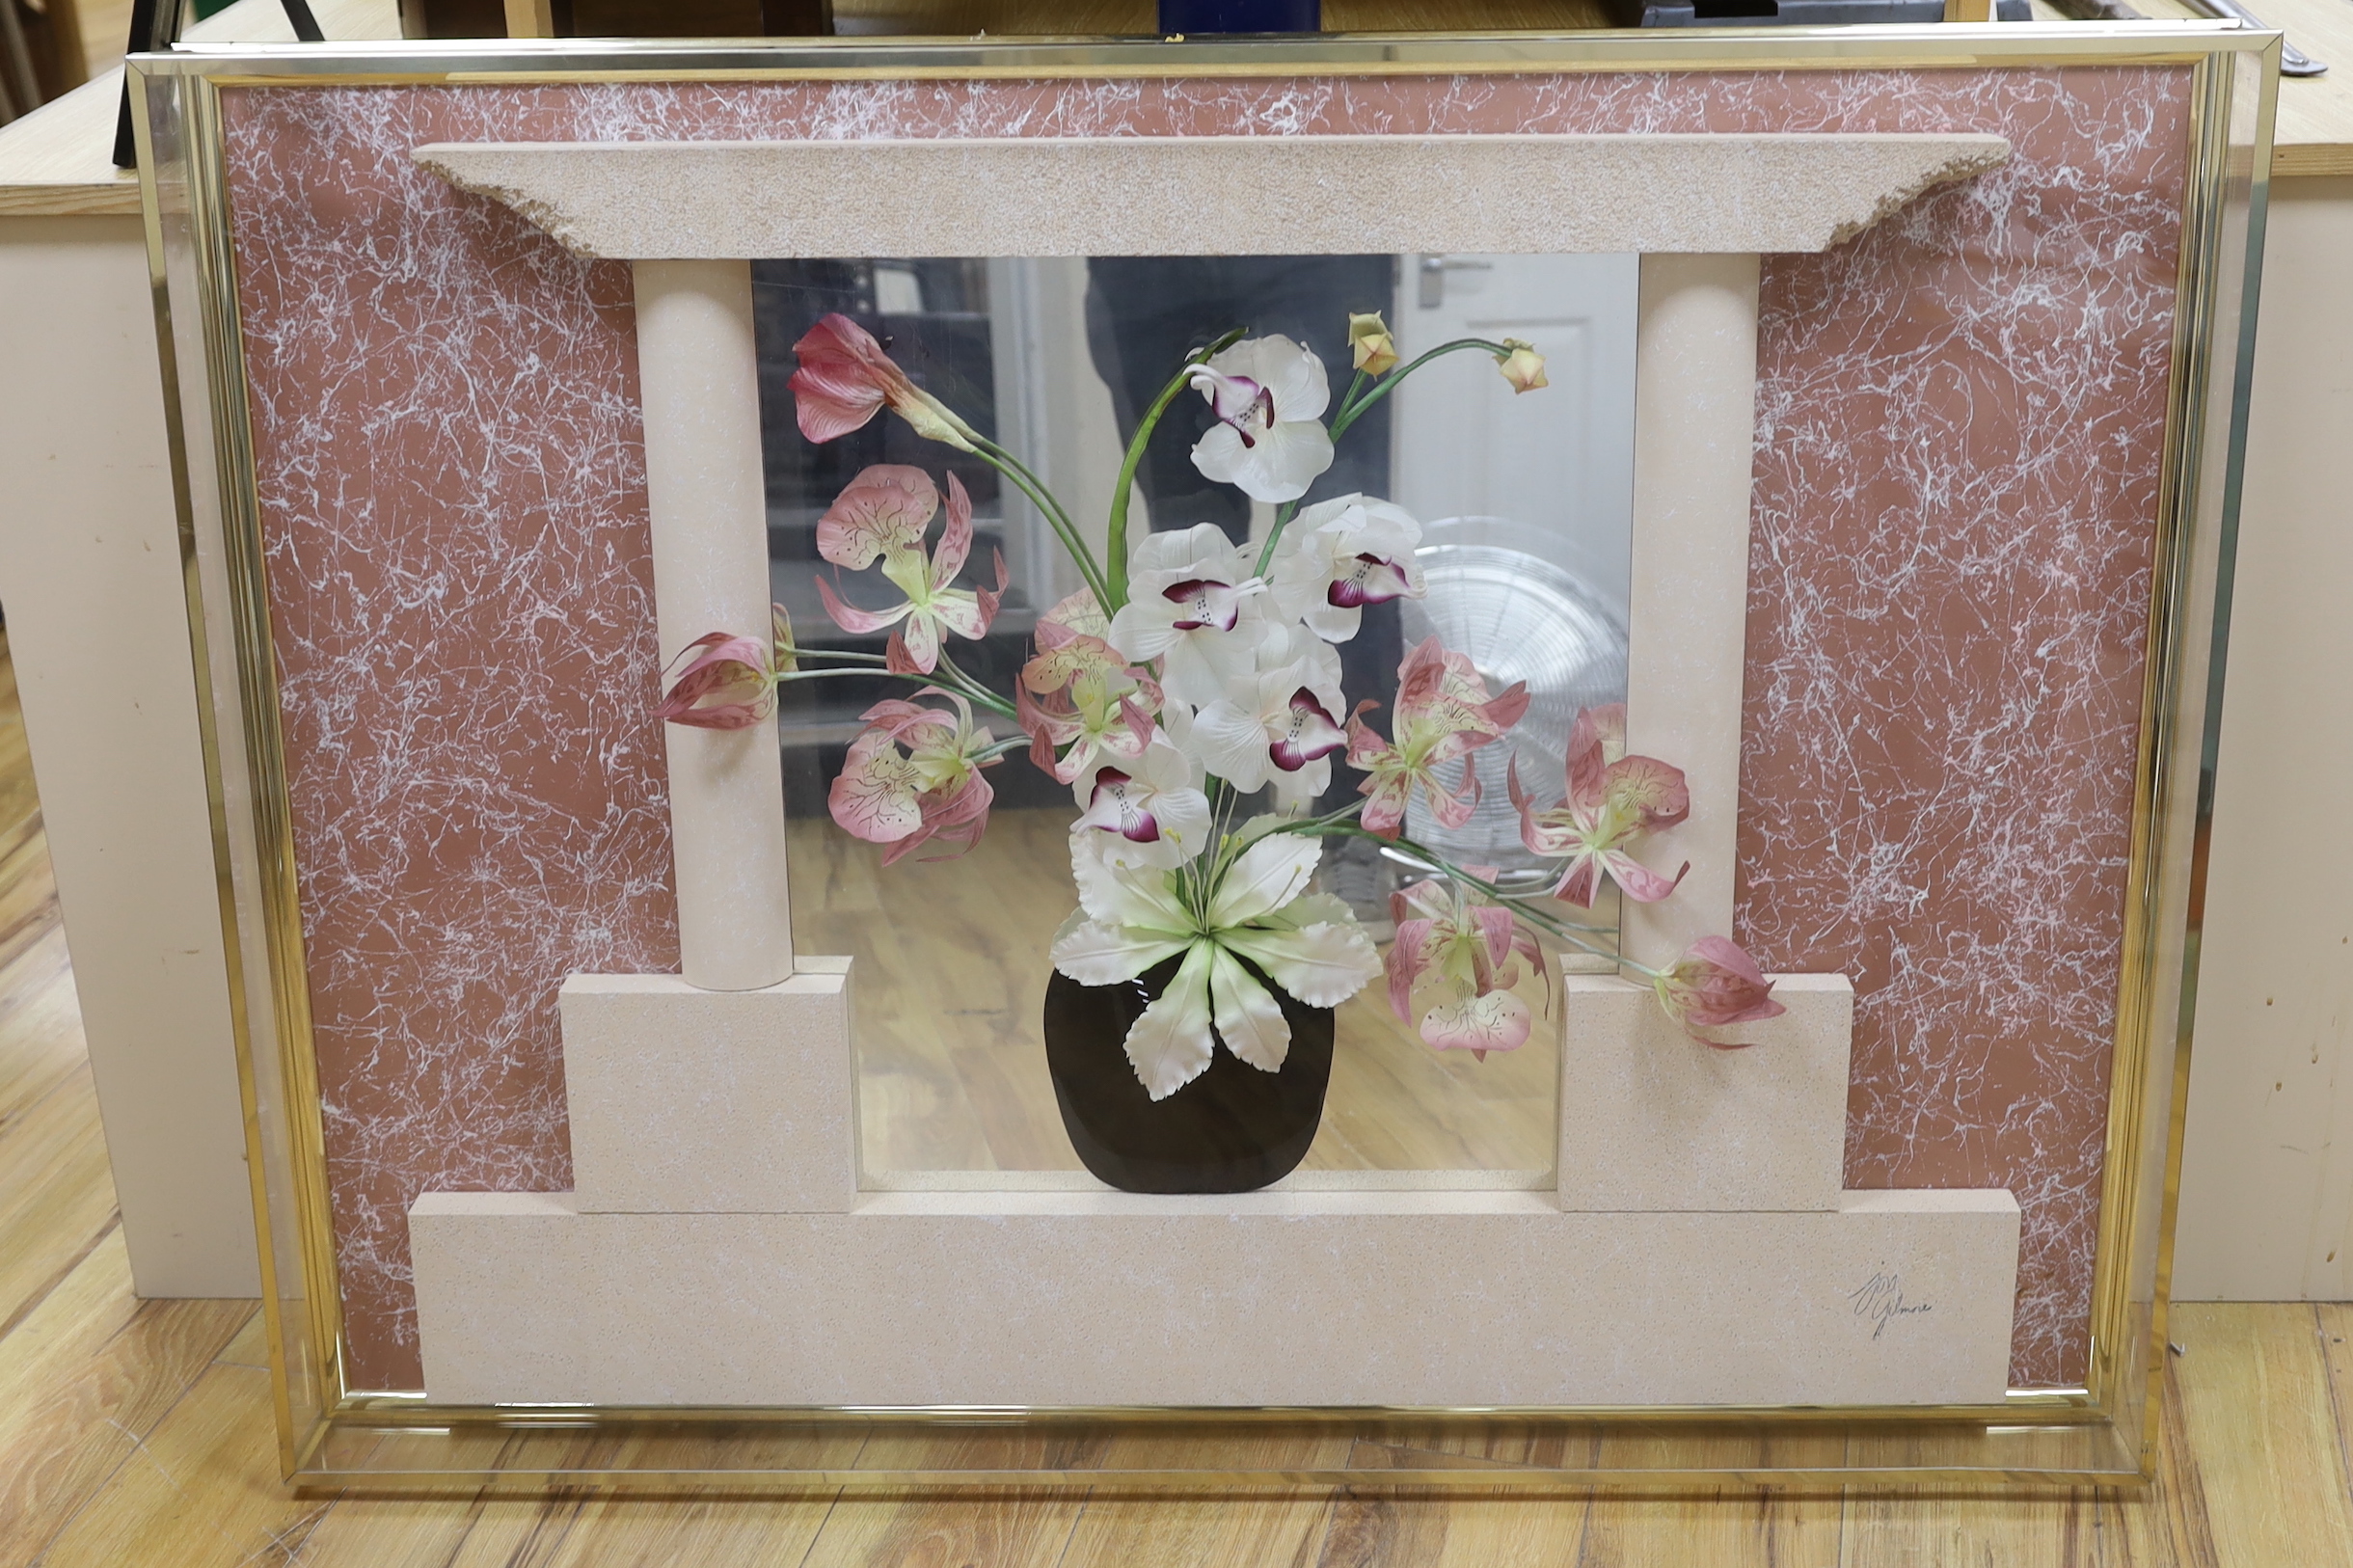 John Gilmore - a framed floral display, 90x120cm